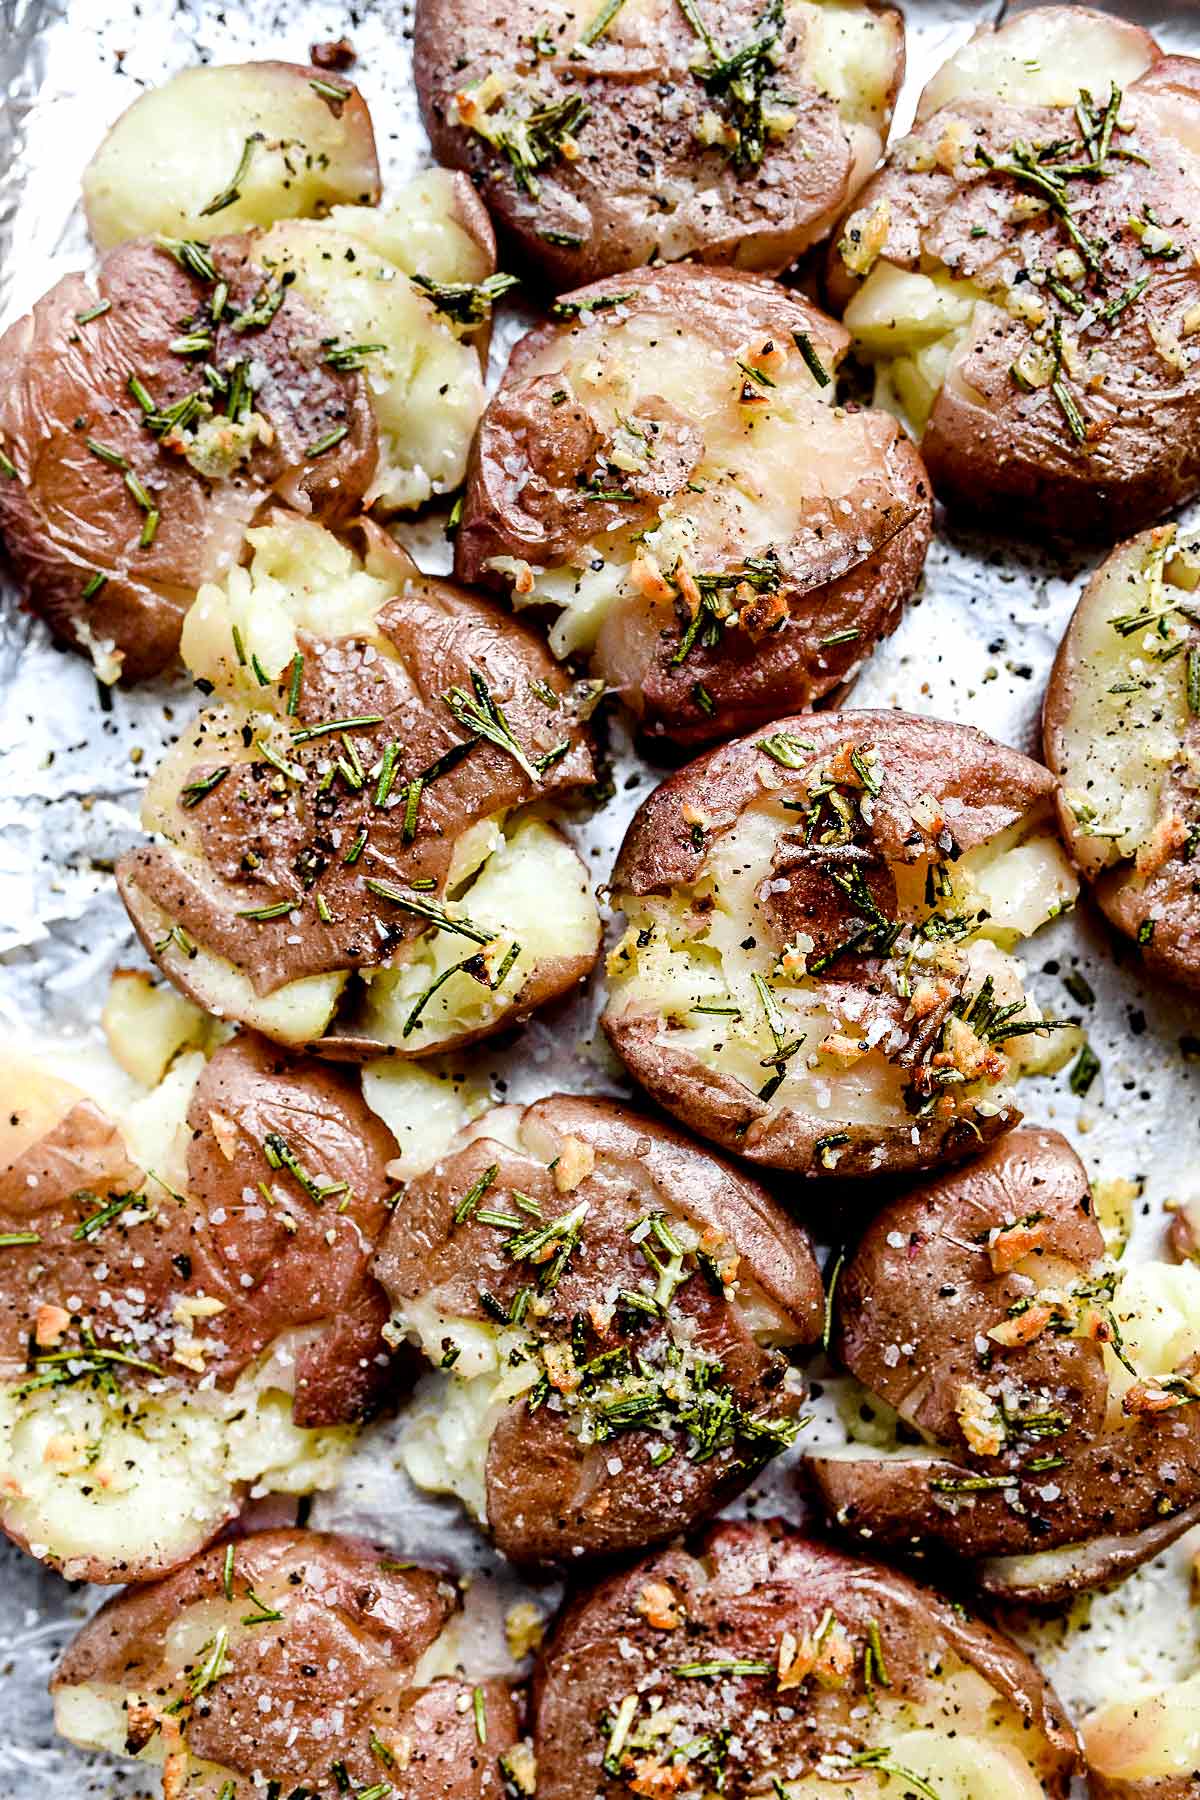 https://www.foodiecrush.com/wp-content/uploads/2018/09/Rosemary-Garlic-Smashed-Potatoes-foodiecrush.com-010.jpg